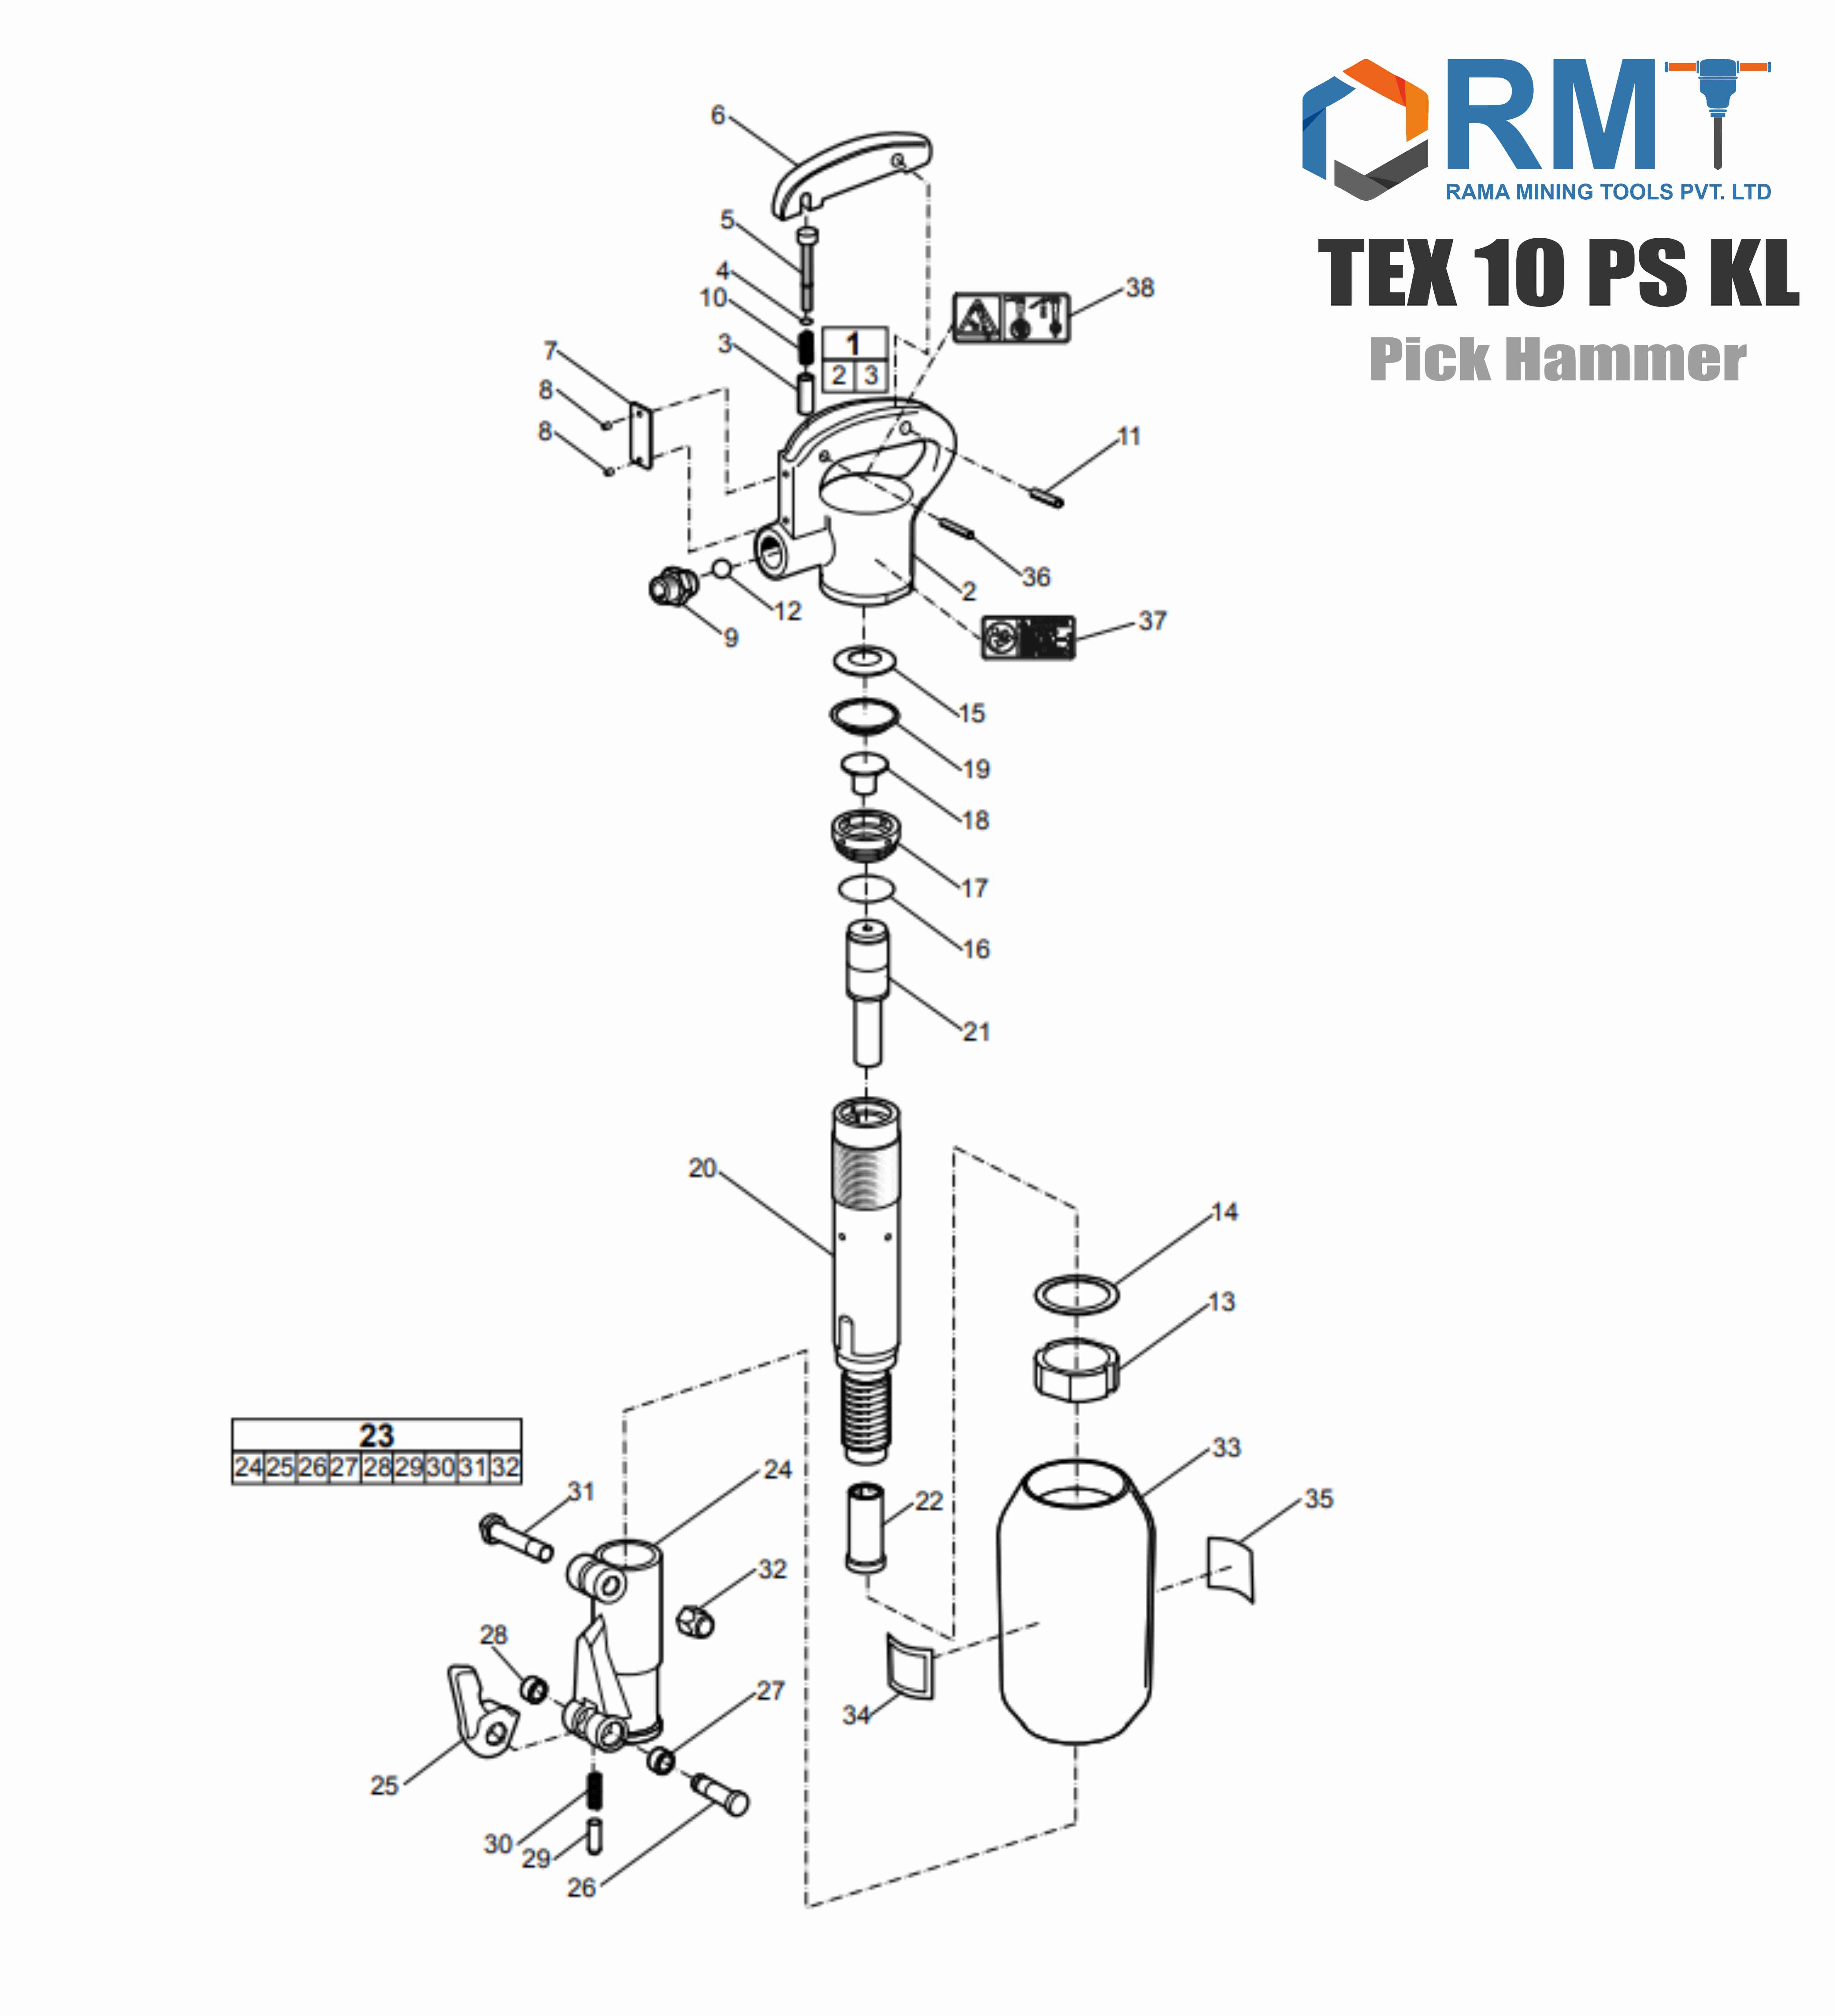 TEX 10 PS KL - Pick Hammer